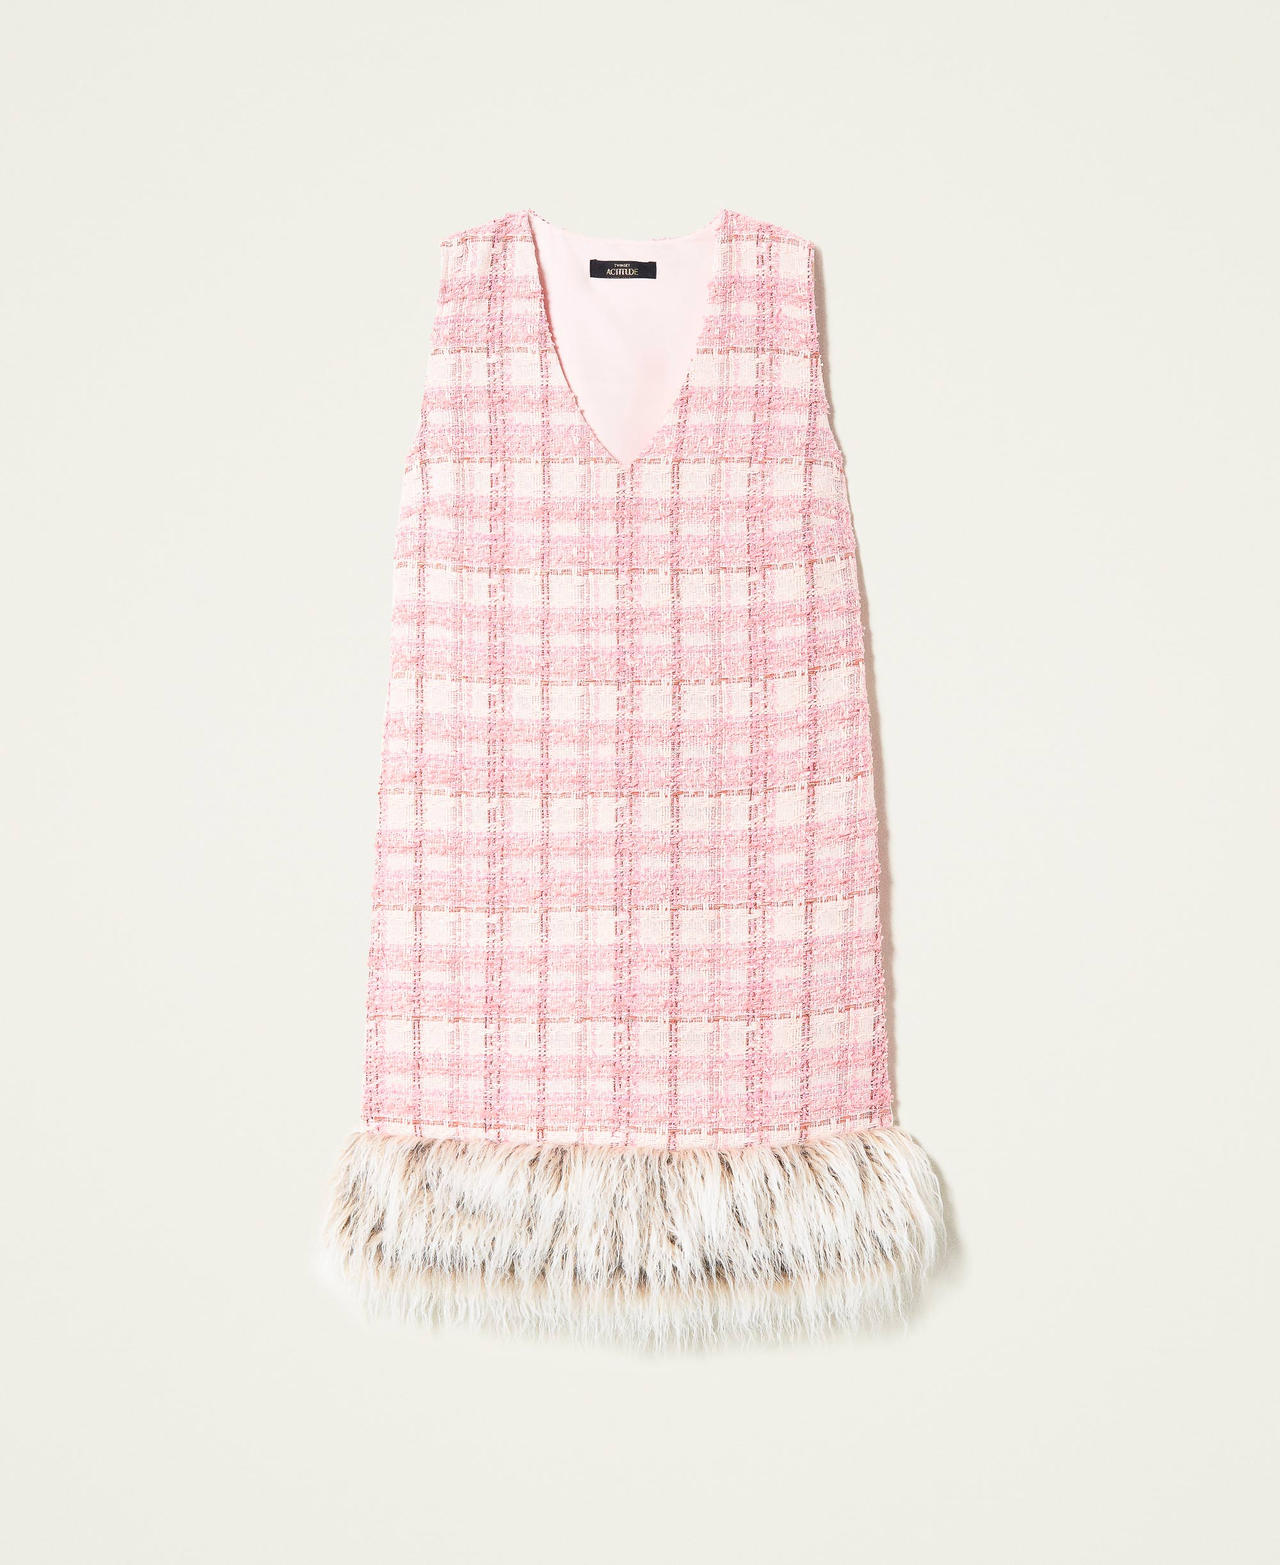 Robe ajustée en tissu bouclé avec fausse fourrure Rose « Pink Icing Bouclé » Femme 222AP2390-0S